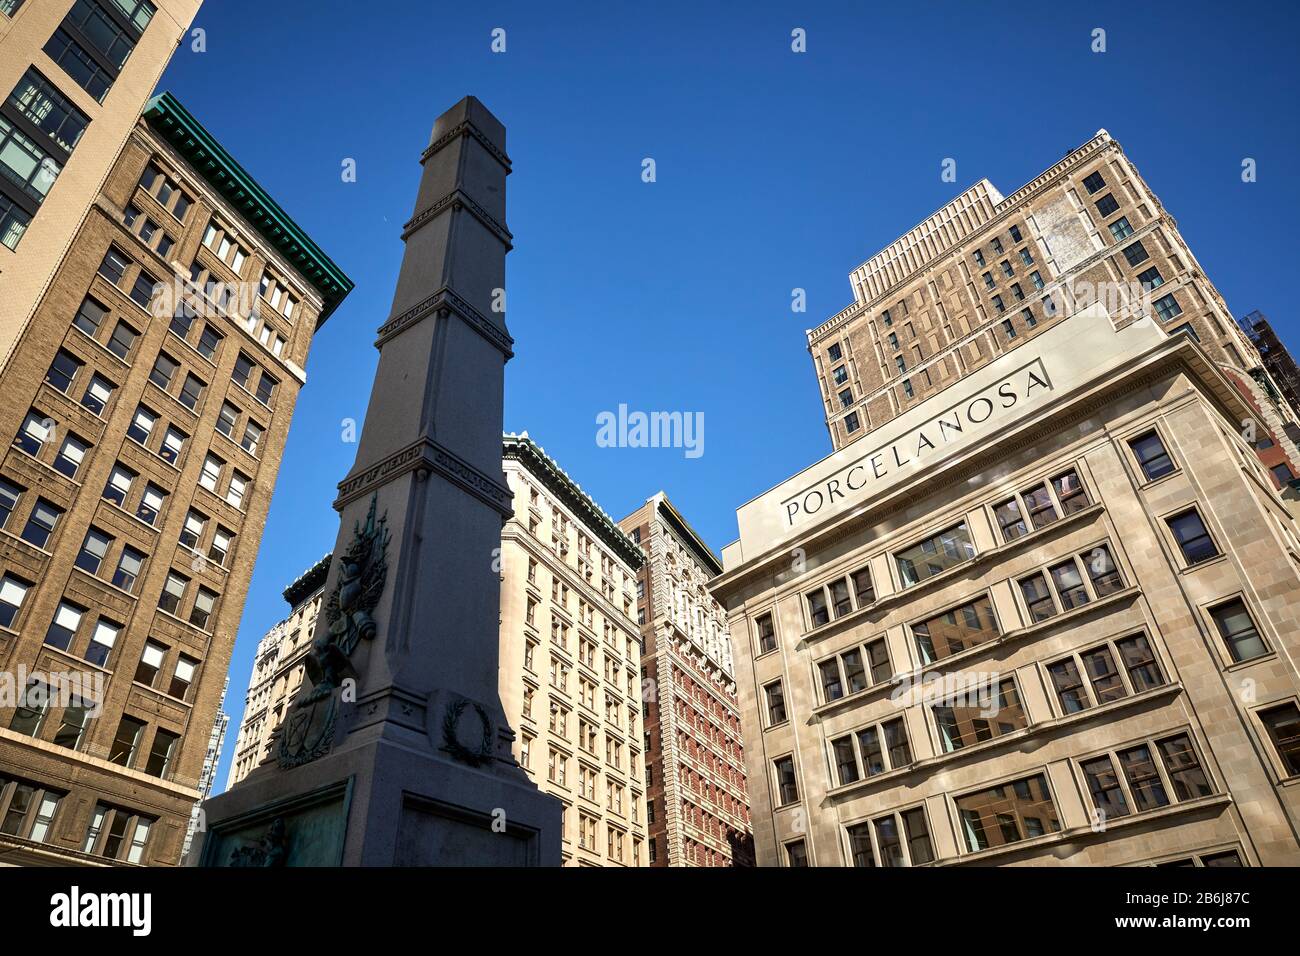 Ciudad de Nueva York Manhattan fachada neoclásica nuevo edificio PORCELANOSA en el distrito de la Quinta Avenida Flatiron y el monumento Mayor General Worth Foto de stock